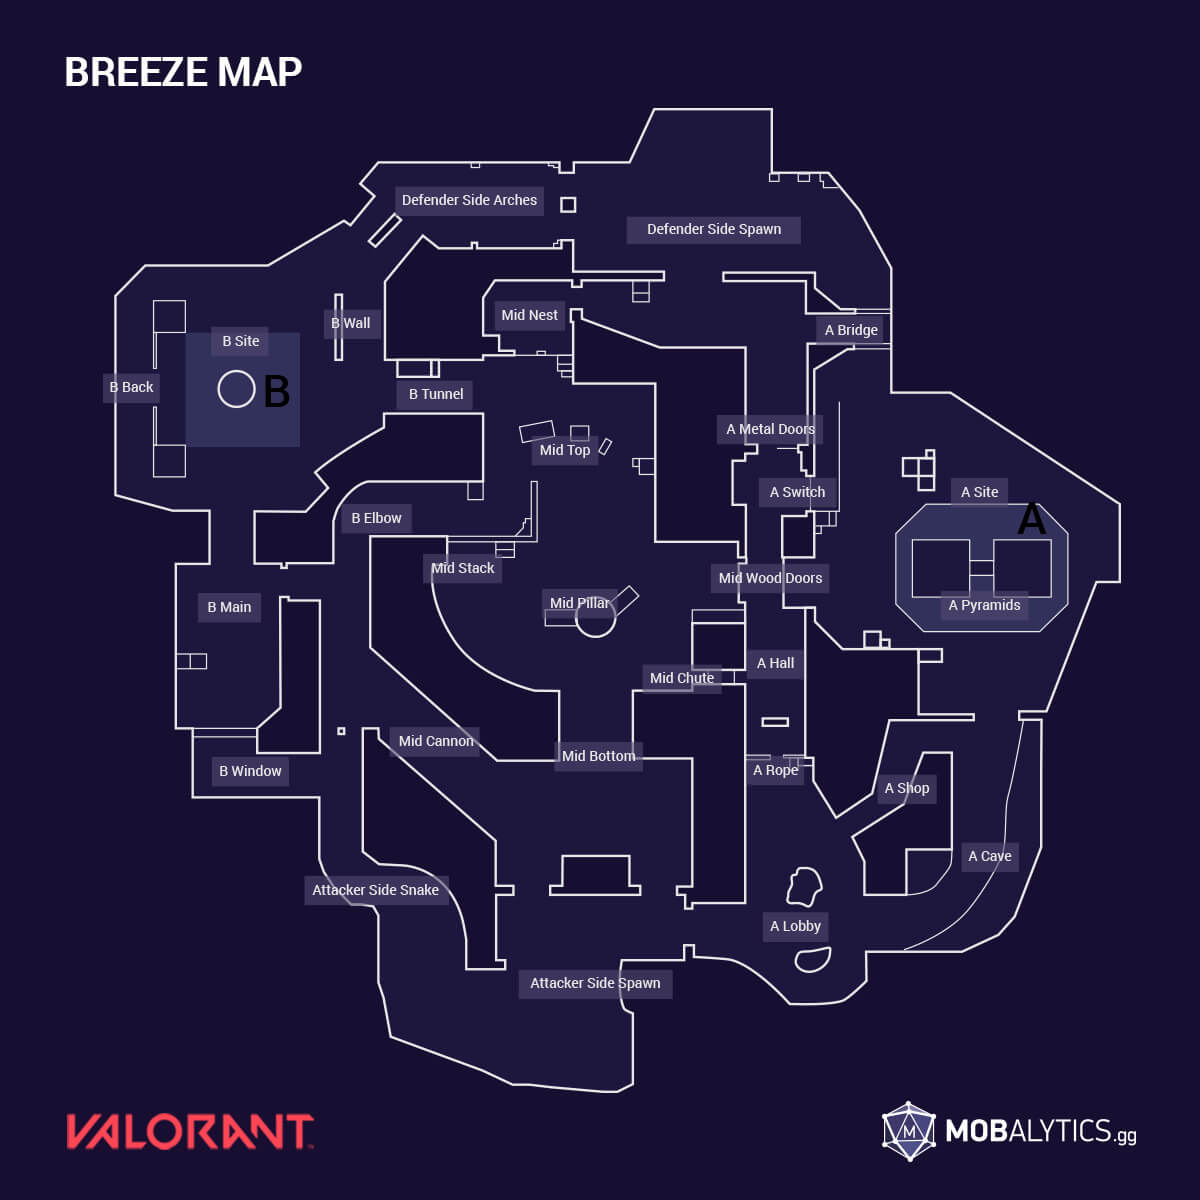 Valorant recebe novo mapa Breeze e Ato 3 na atualização 2.08 – Tecnoblog